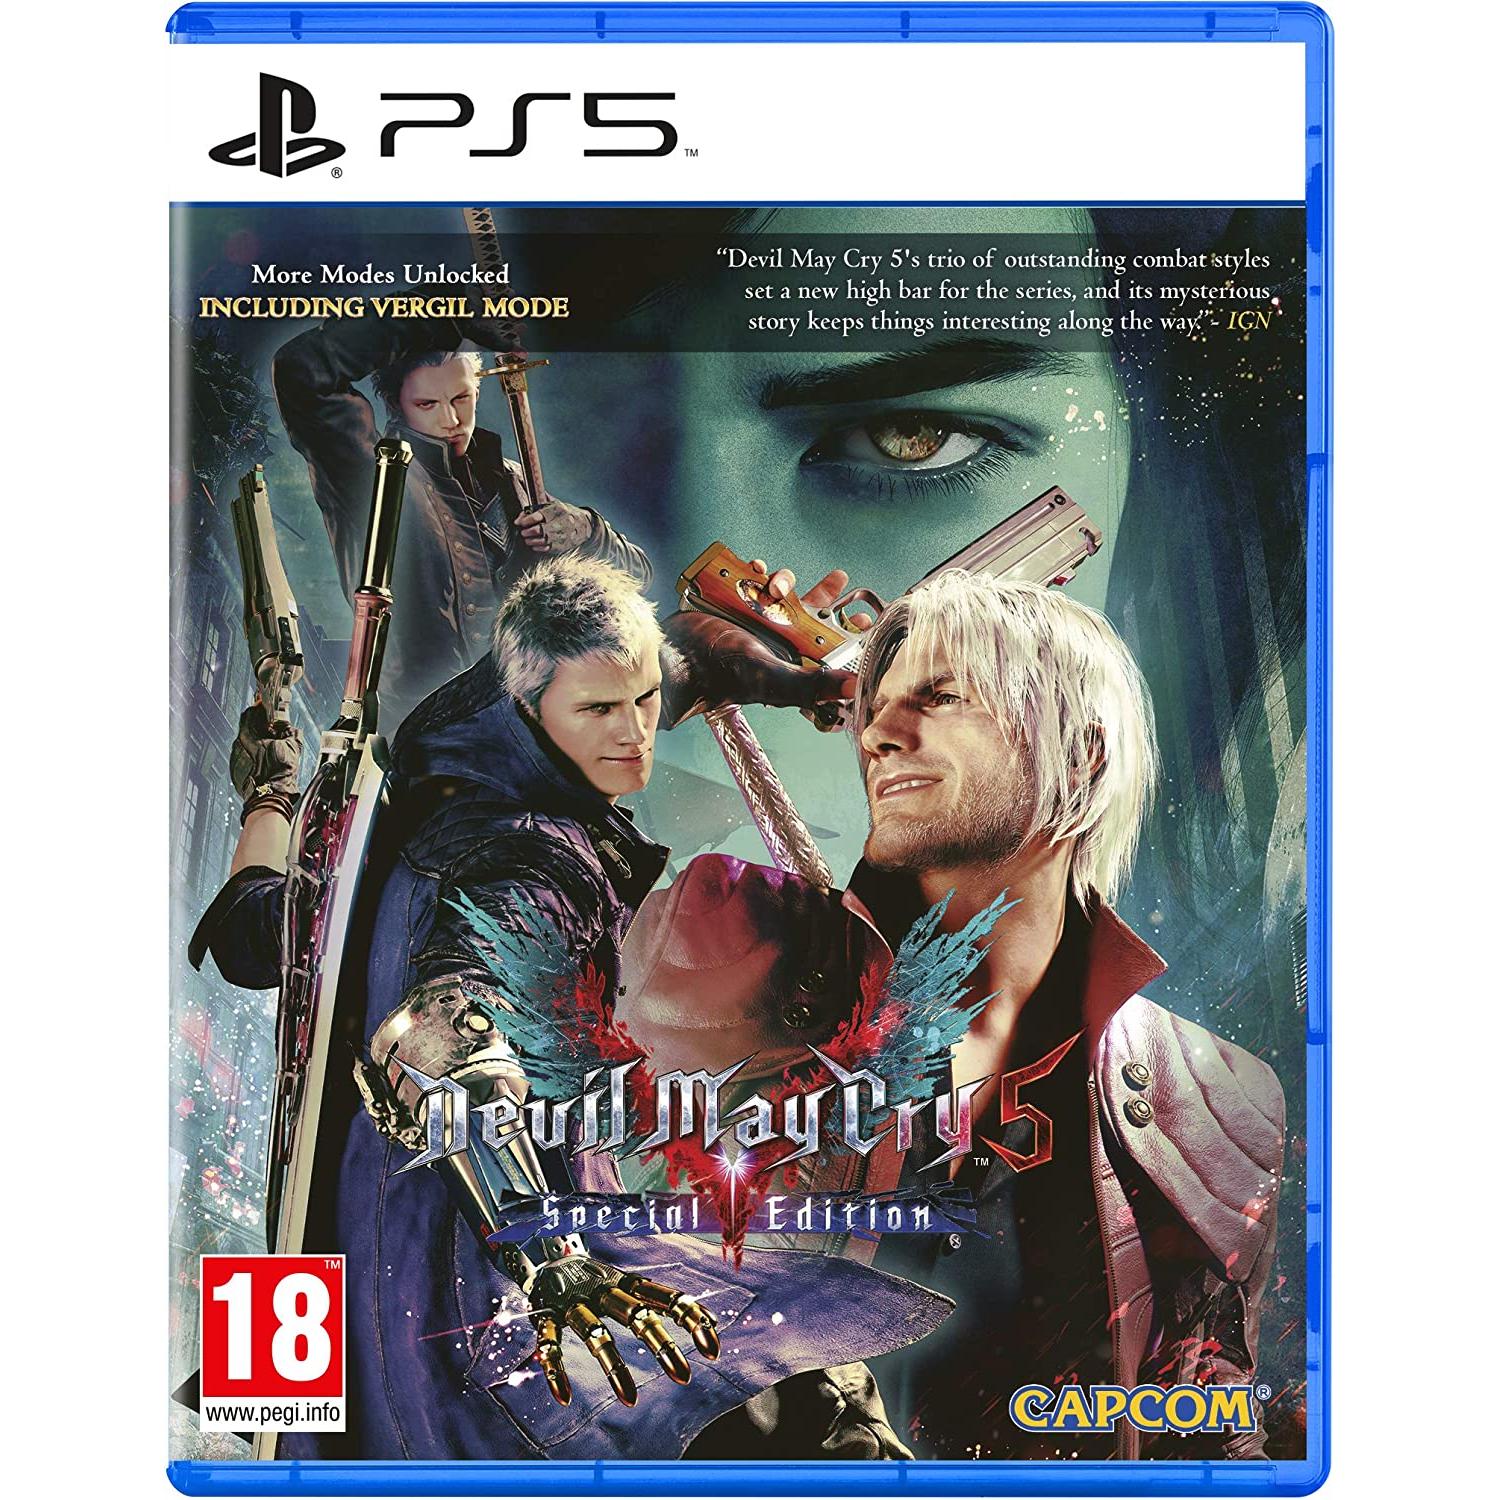 Playstation - Devil May Cry 5 Special Edition - PS5 - Nuevo precintado - PAL España